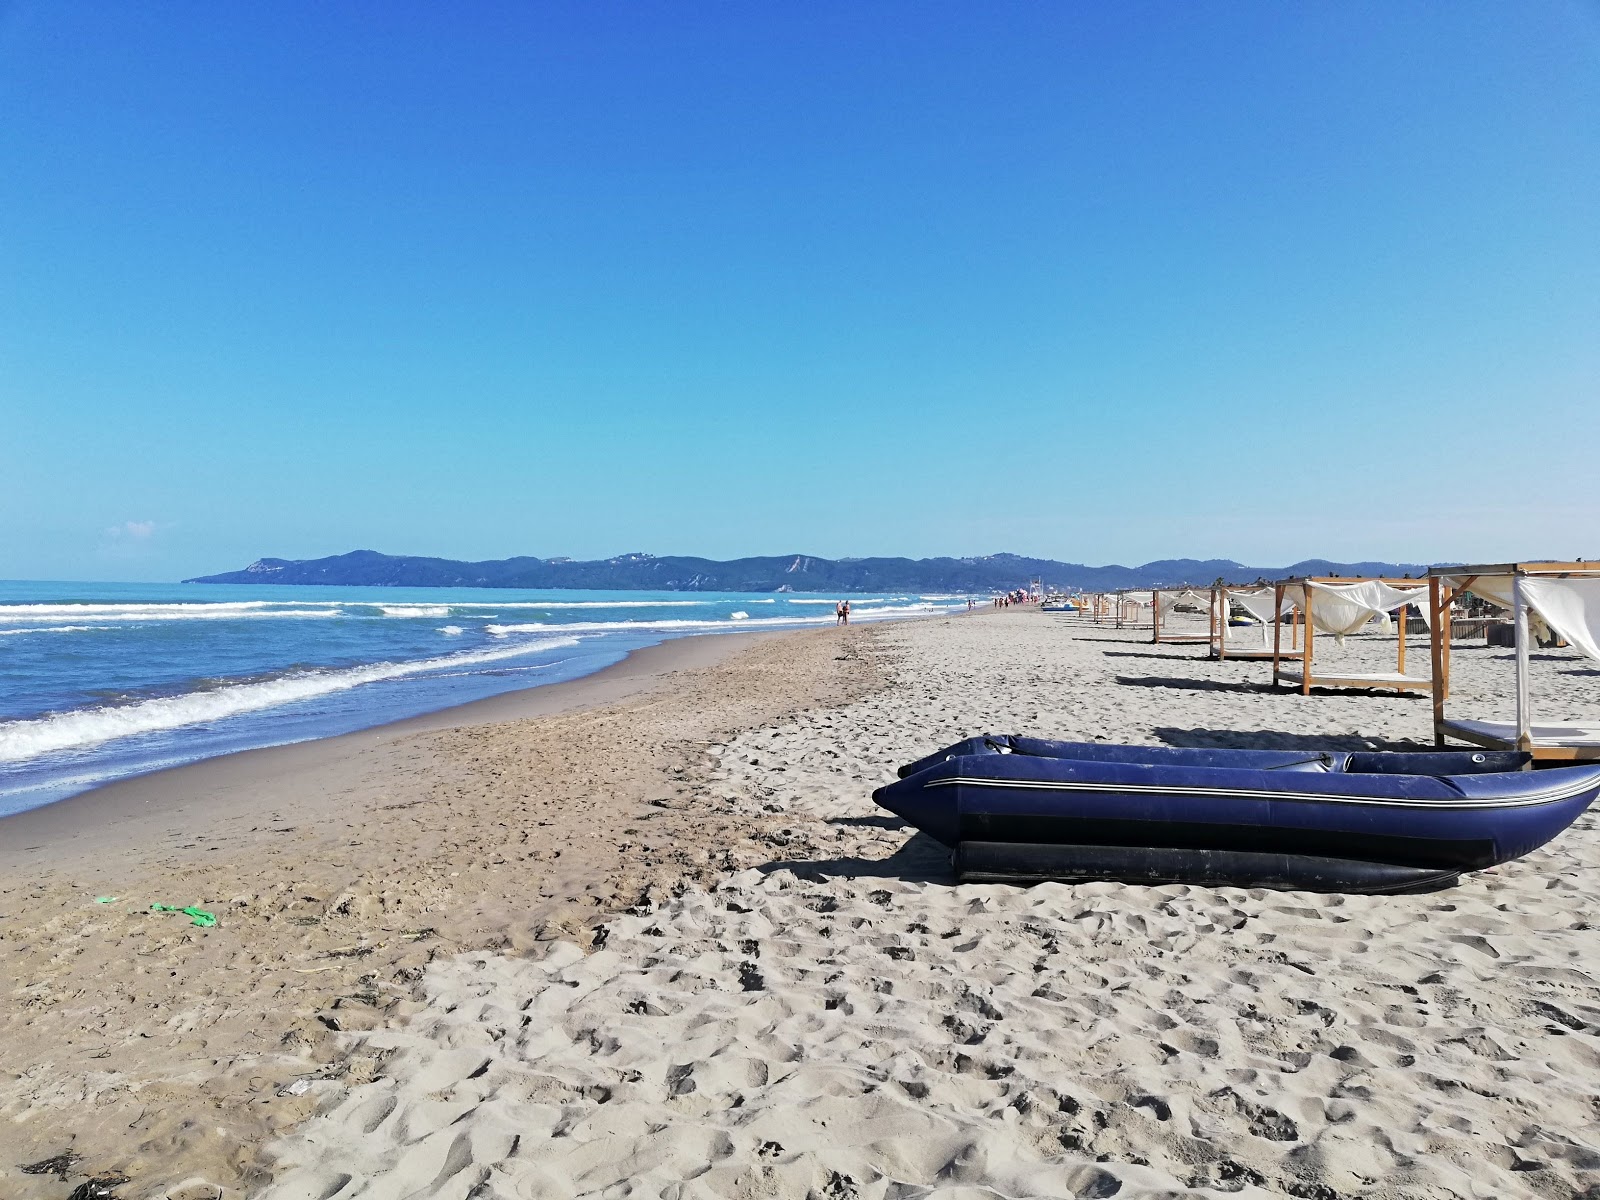 Ibiza beach'in fotoğrafı geniş plaj ile birlikte